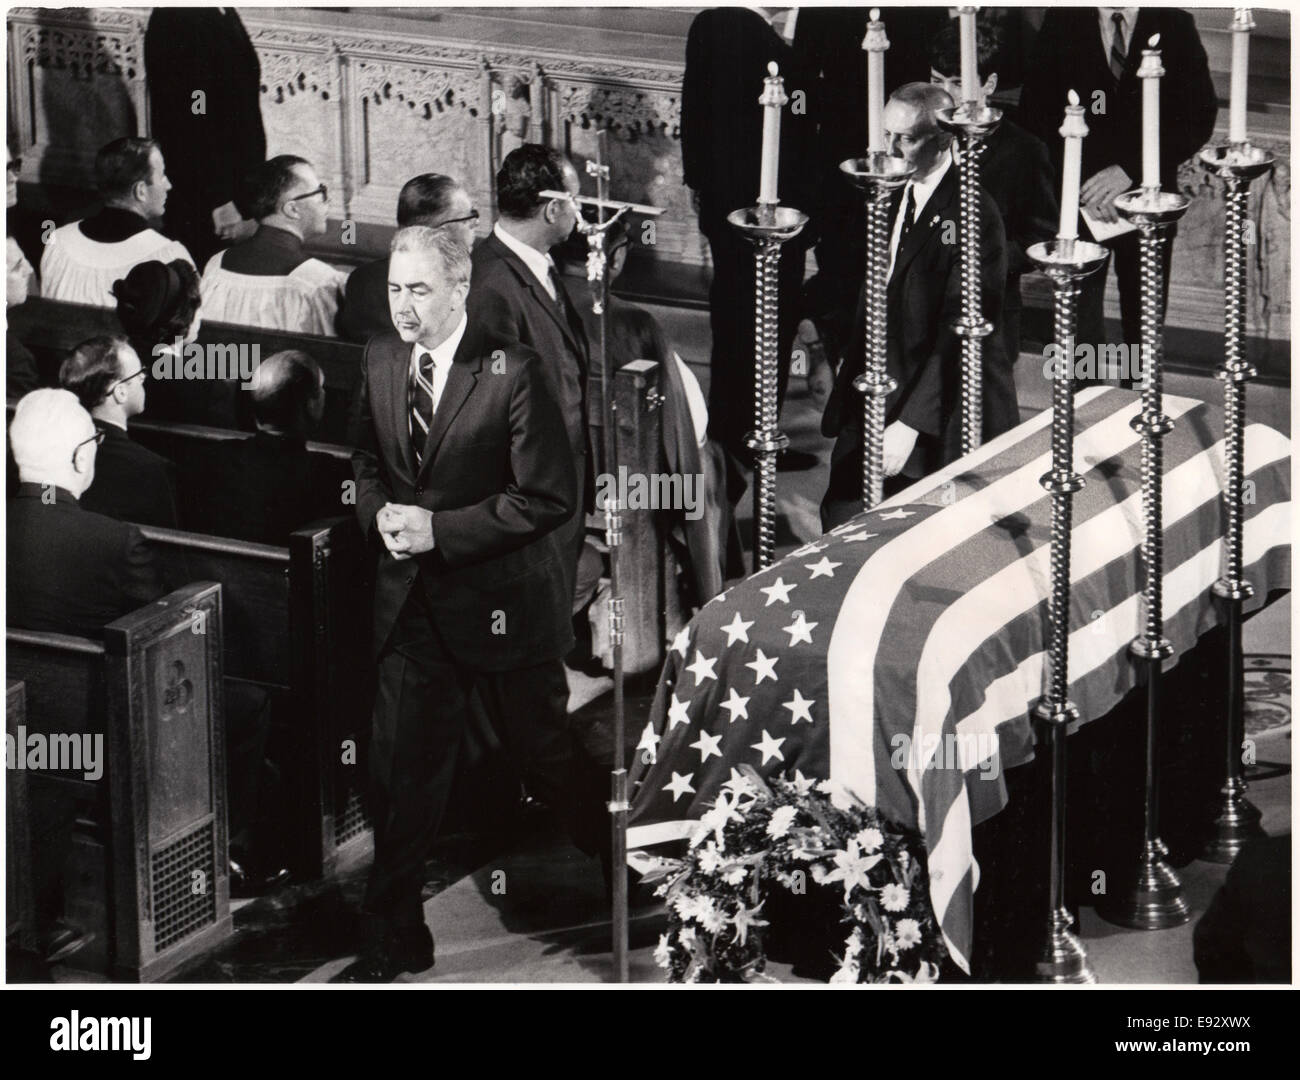 Le sénateur Eugene McCarthy passant cercueil de Robert F. Kennedy après avoir reçu la Communion, la cathédrale Saint-Patrick, New York, USA, 8 juin, 1968 Banque D'Images